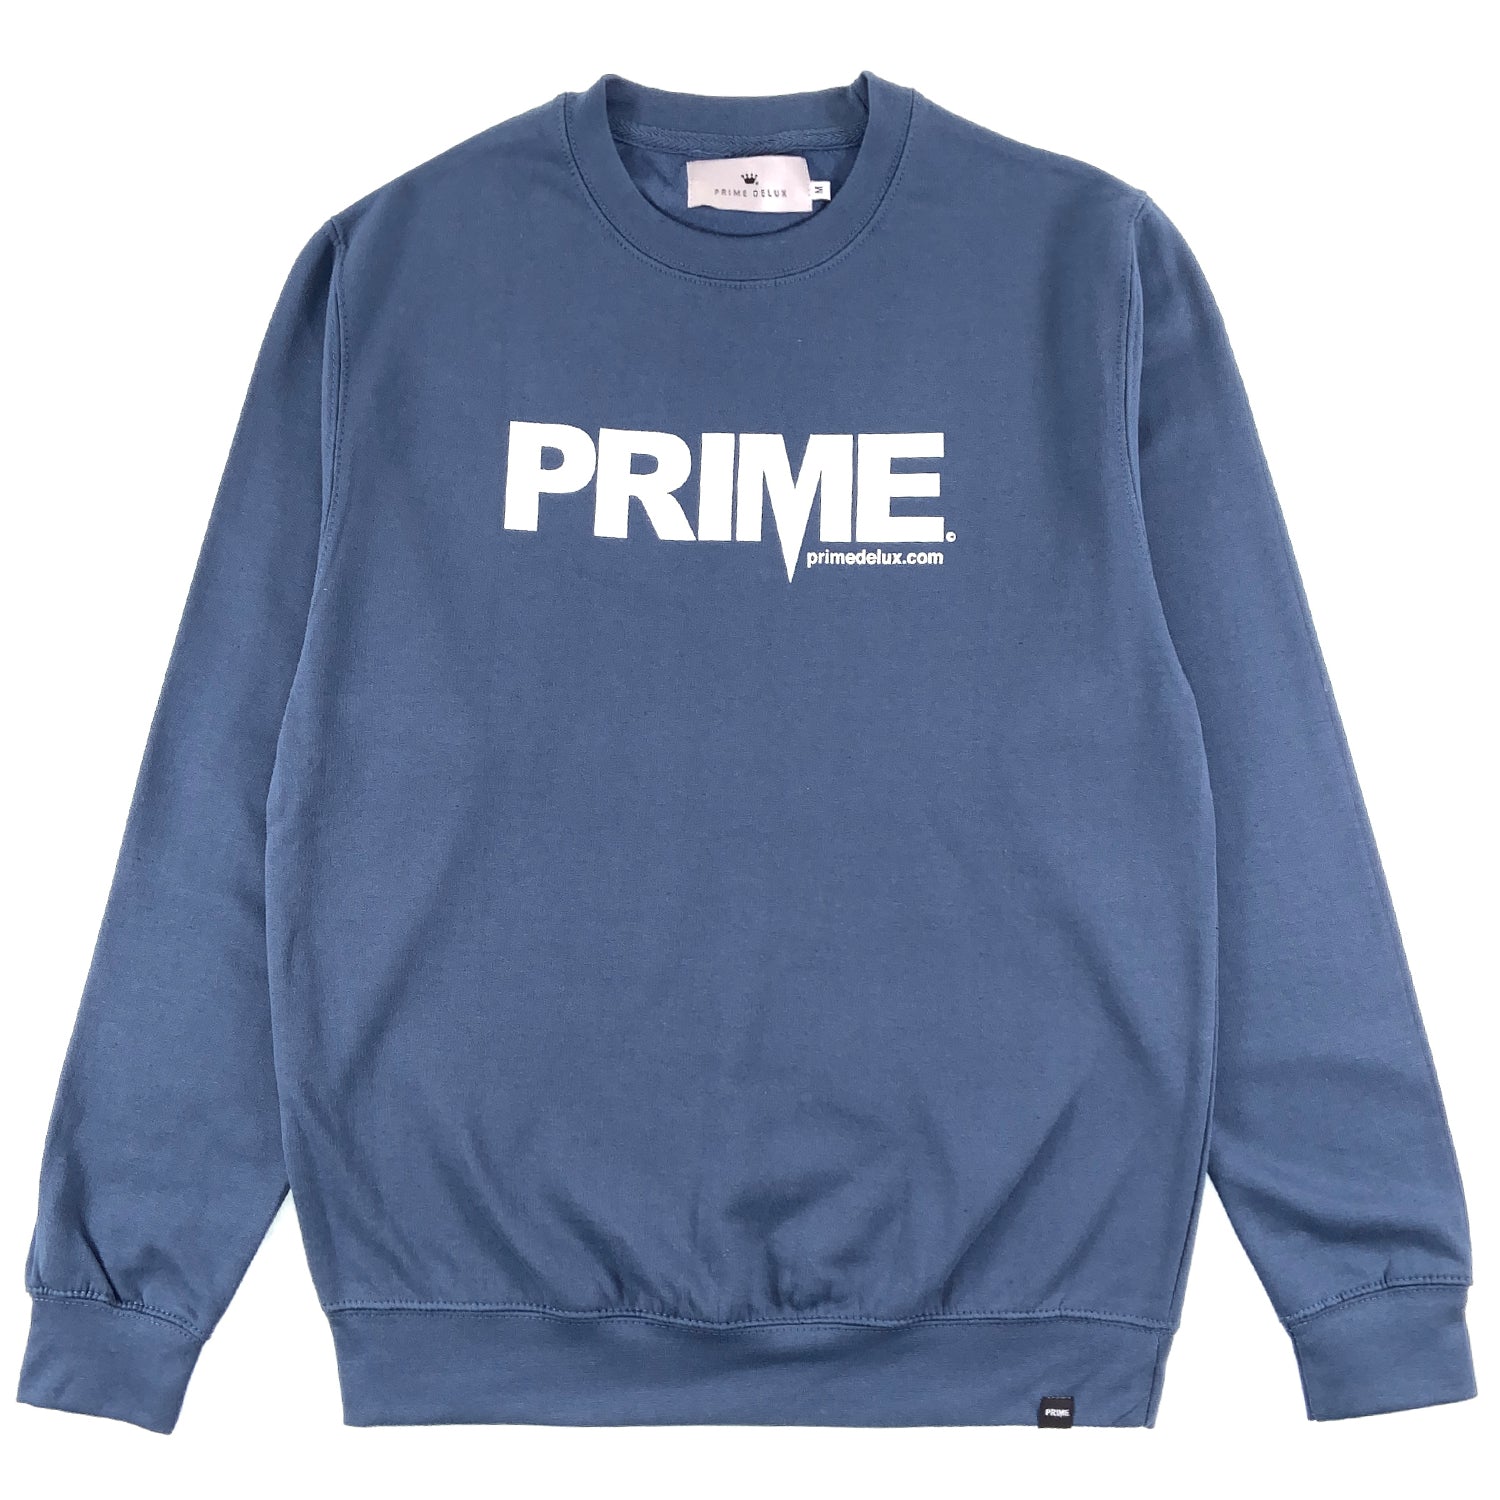 PRIME DELUX OG PREMIUM CREW SWEAT - AIRFORCE BLUE / WHITE - Prime Delux Store